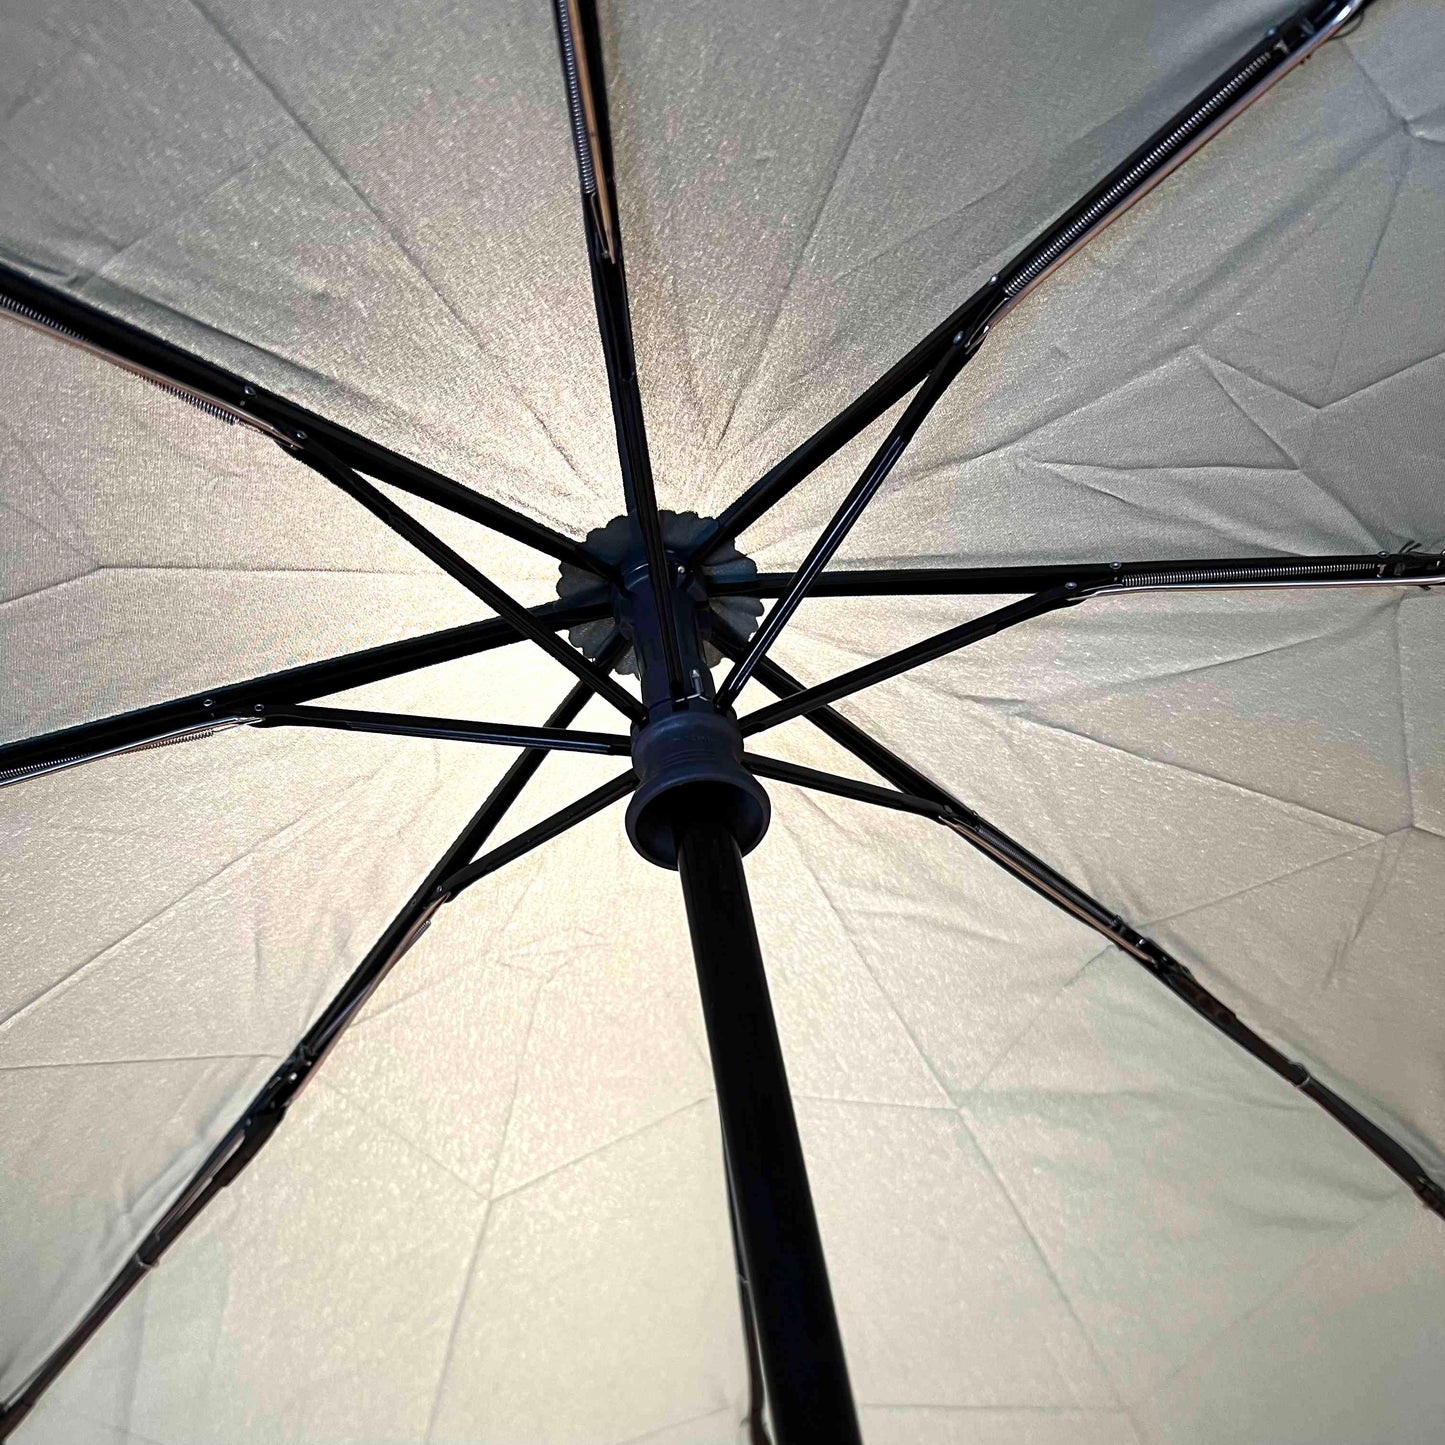 KNIRPS® Vision Duomatic | kompakter Regenschirm | verschiedene Farben | nachhaltig